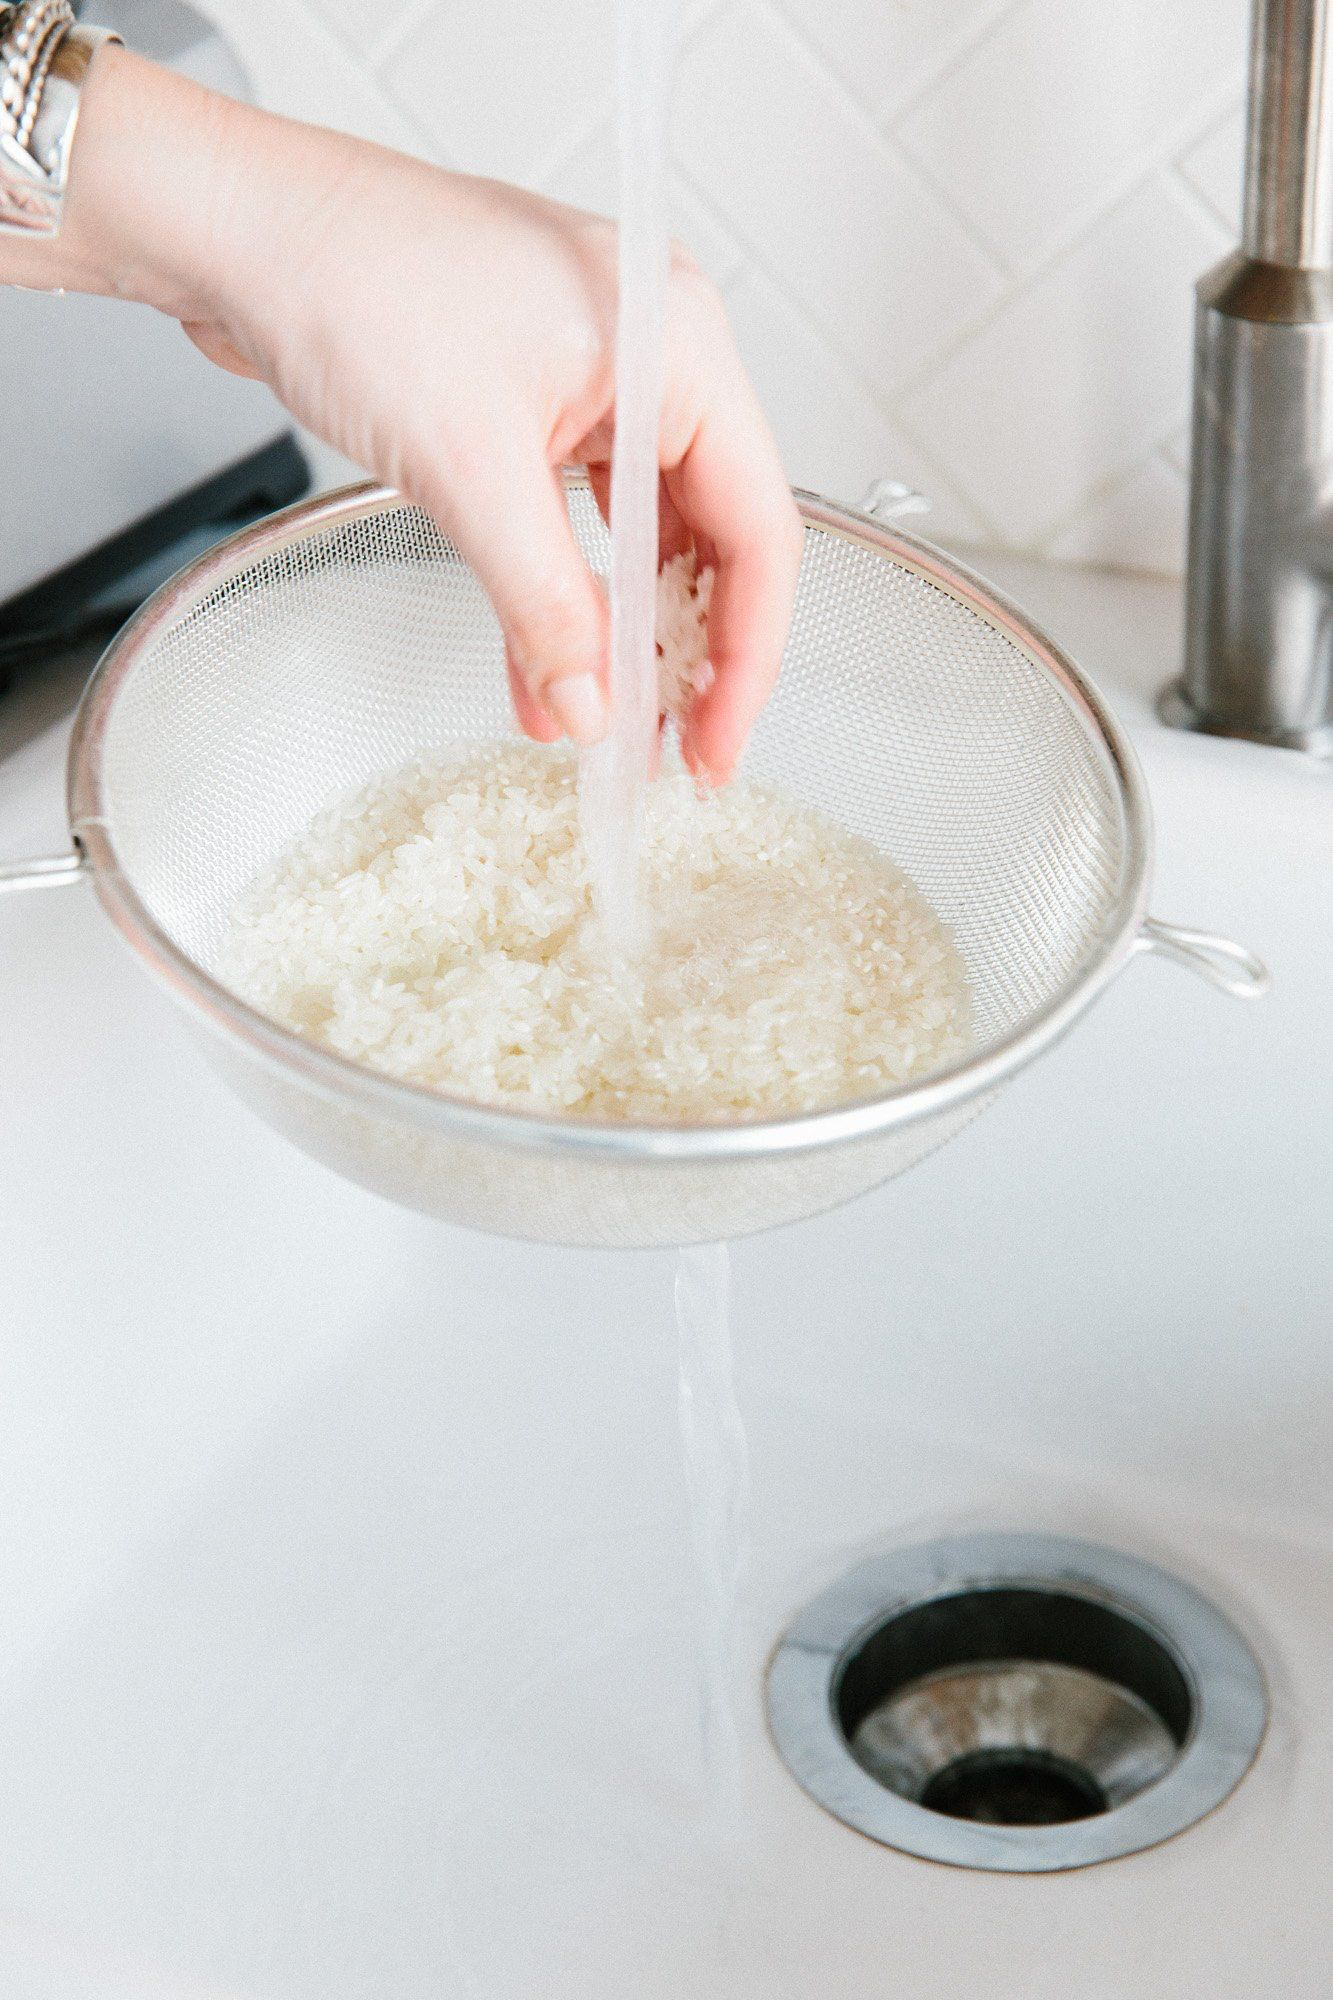 Nước vo gạo: Chất tẩy rửa không tốn một đồng mà hầu như tất cả chúng ta đều lãng quên - Ảnh 2.